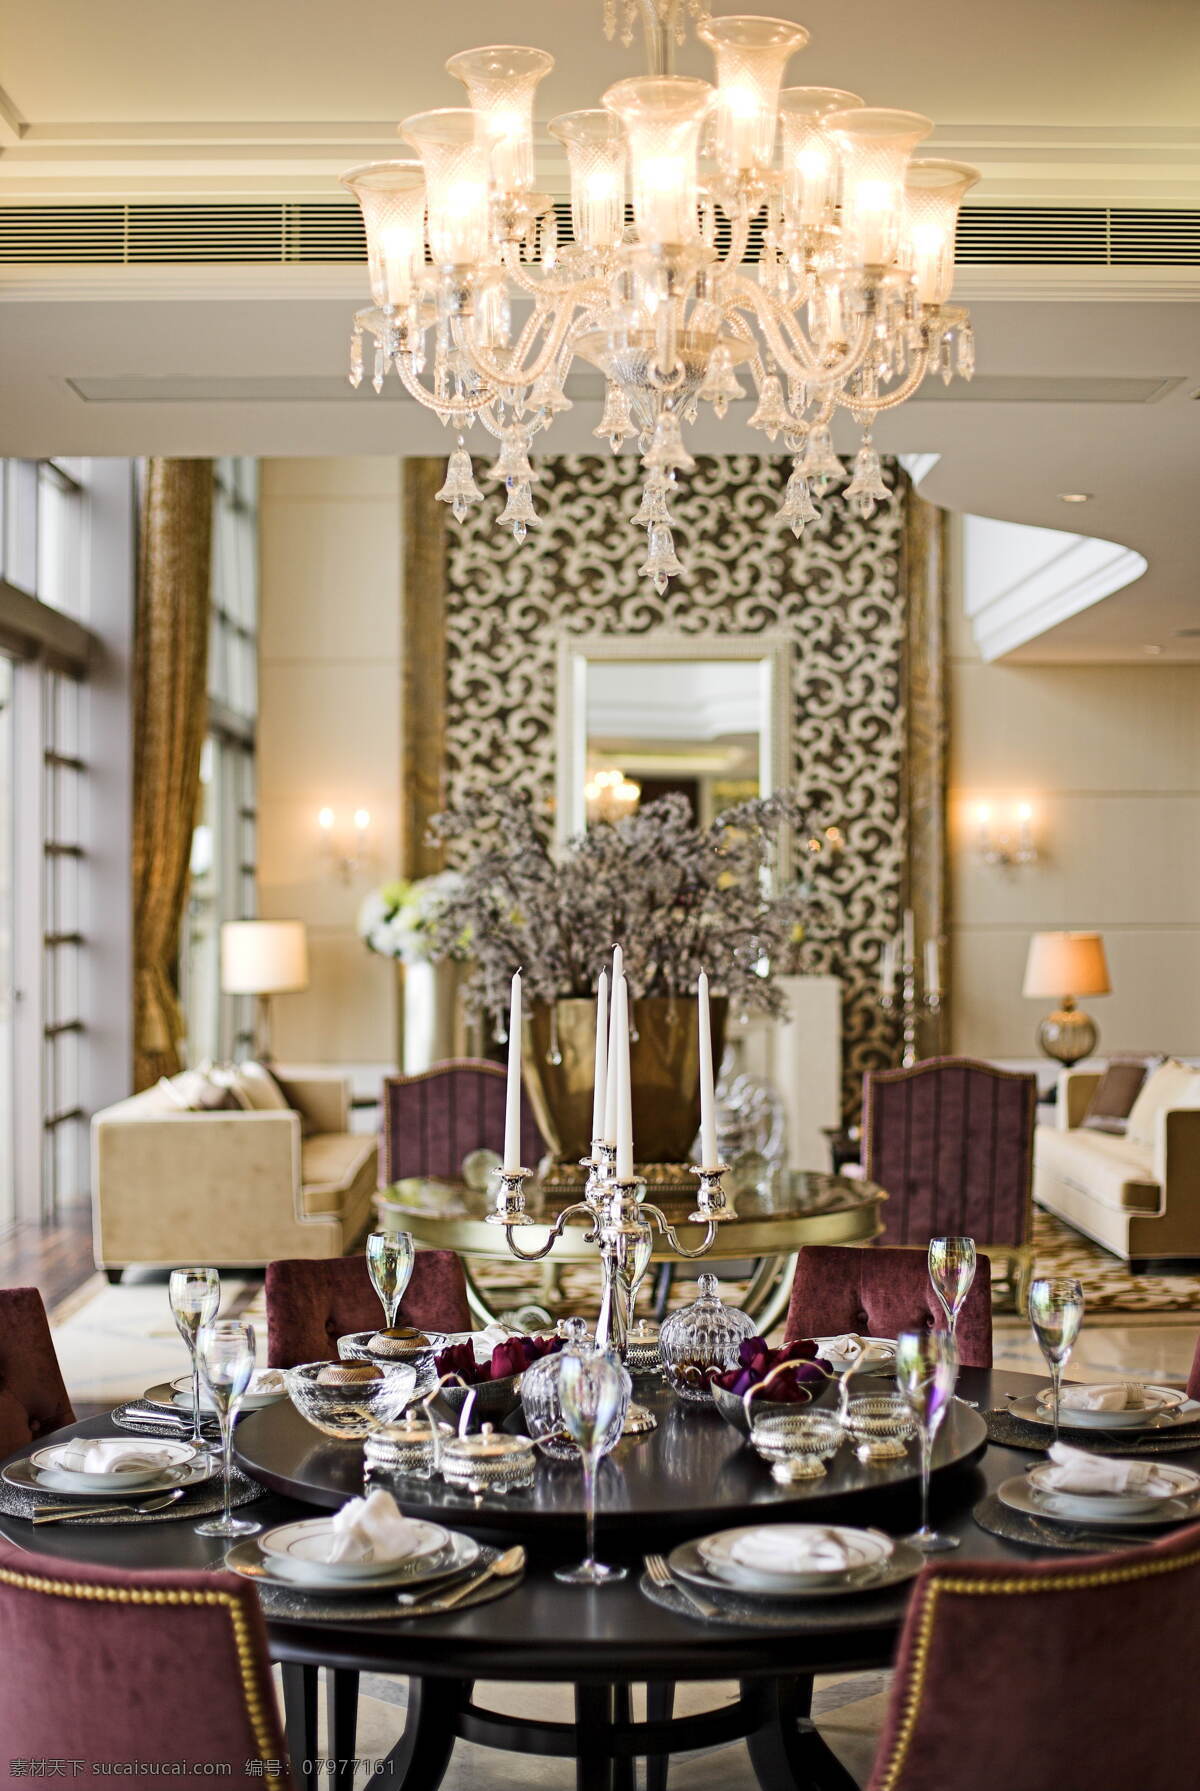 欧式 风格 水晶灯 客厅 室内装修 效果图 客厅装修 大餐桌 烛台